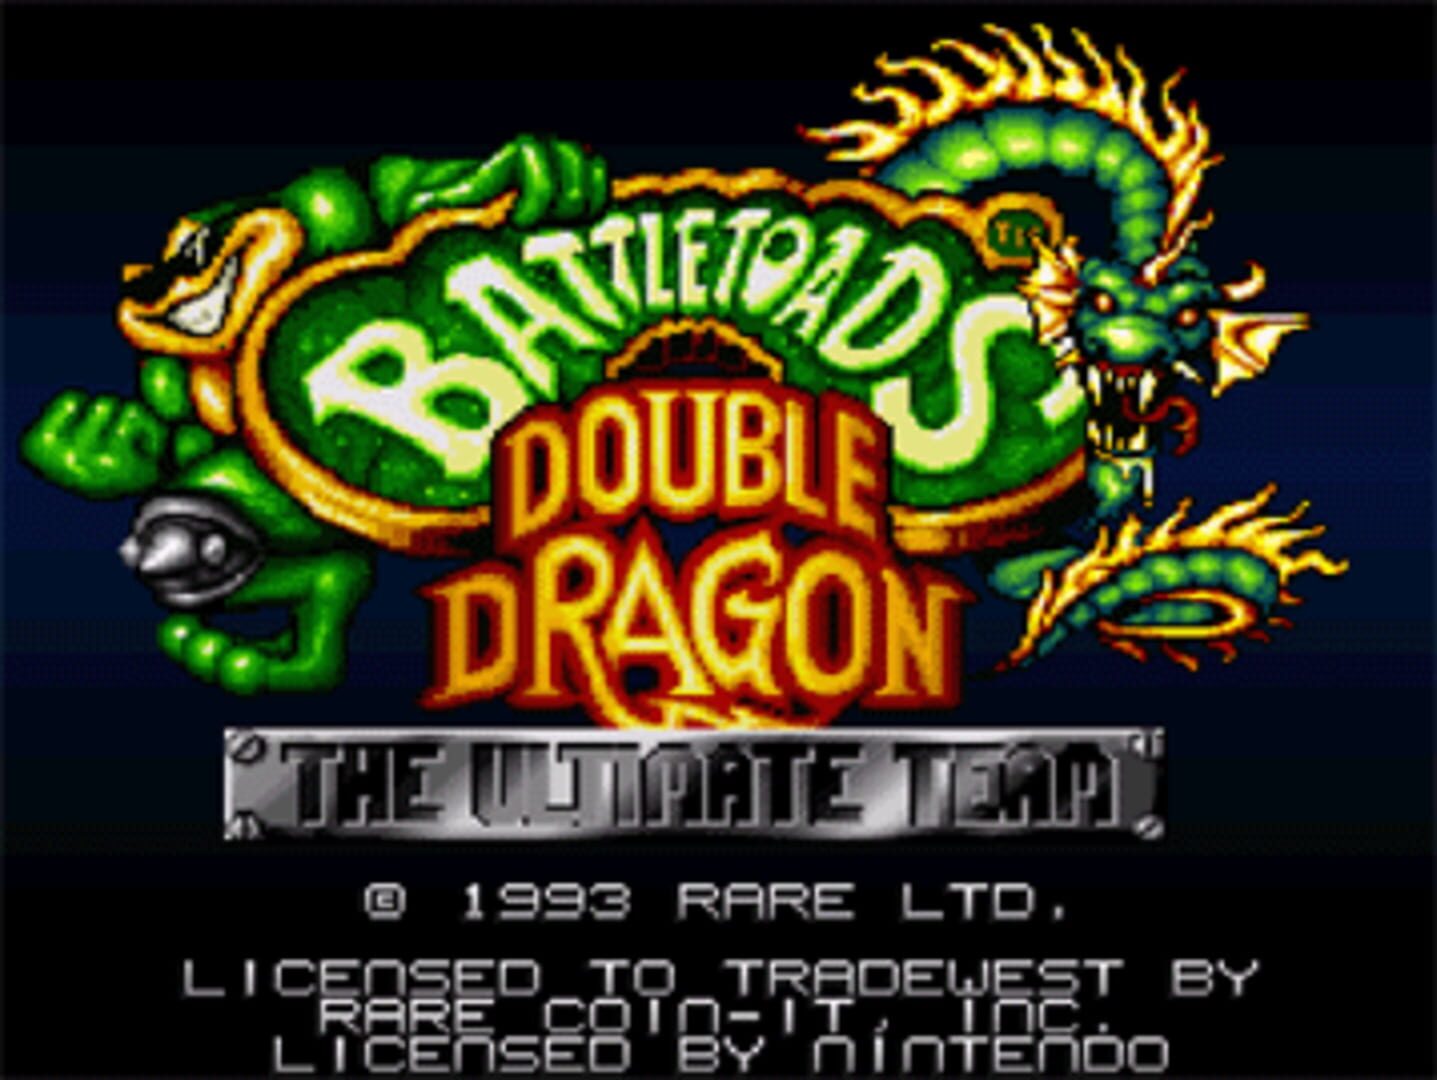 Battletoads ultimate team. Игра Double Dragon. Battletoads Double Dragon the Ultimate Team Snes. Battletoads & Double Dragon - the Ultimate Team. Battletoads and Double Dragon (1993 год, rare).